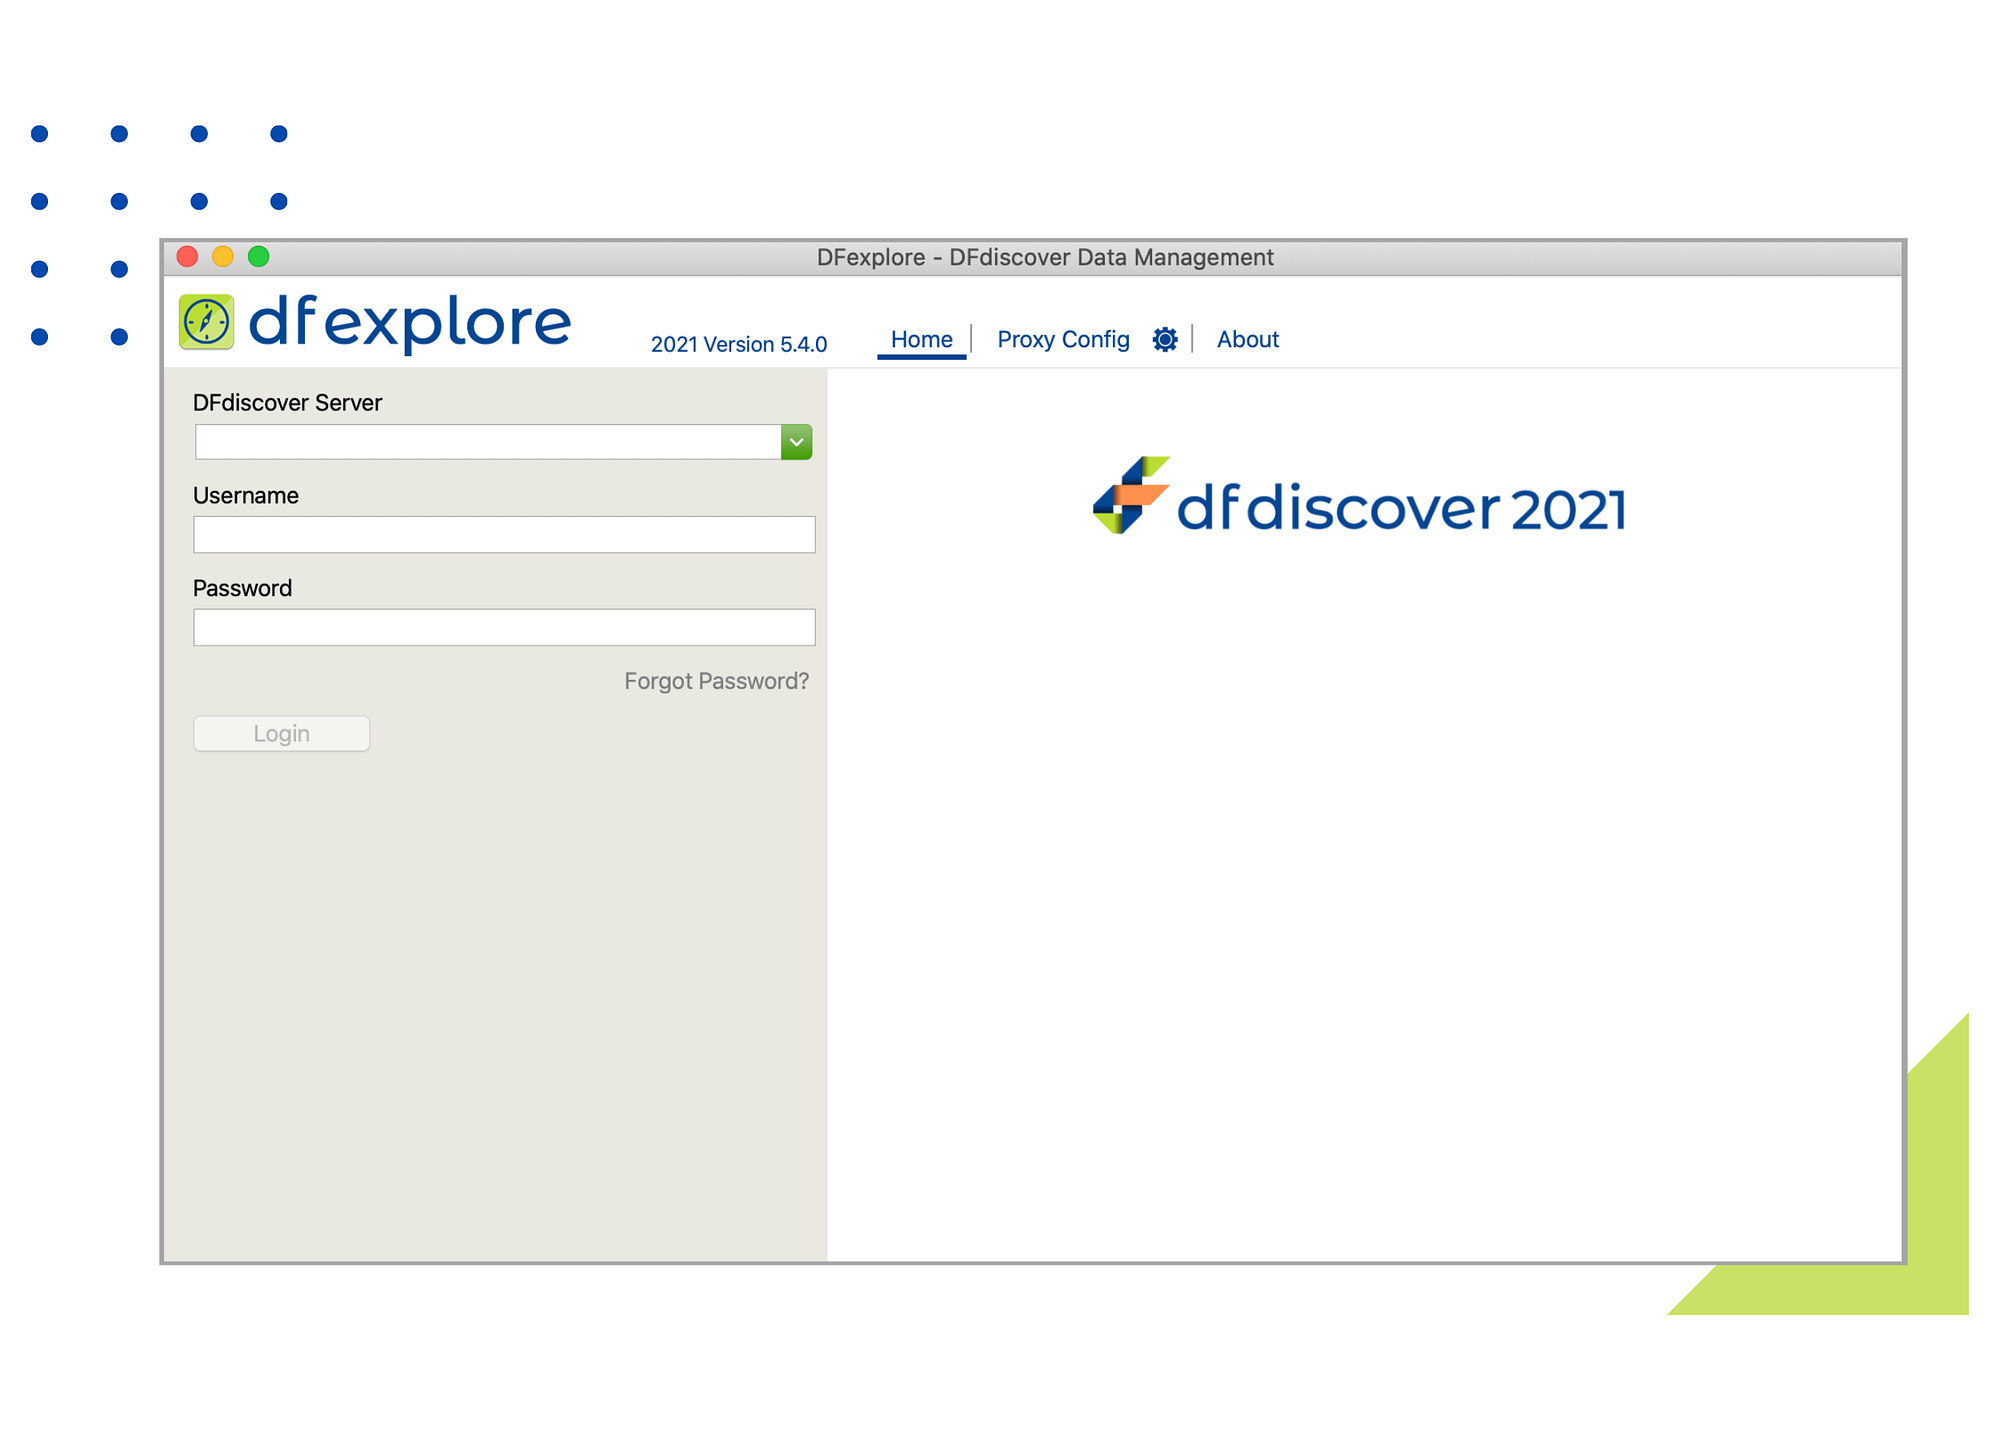 DFexplore website